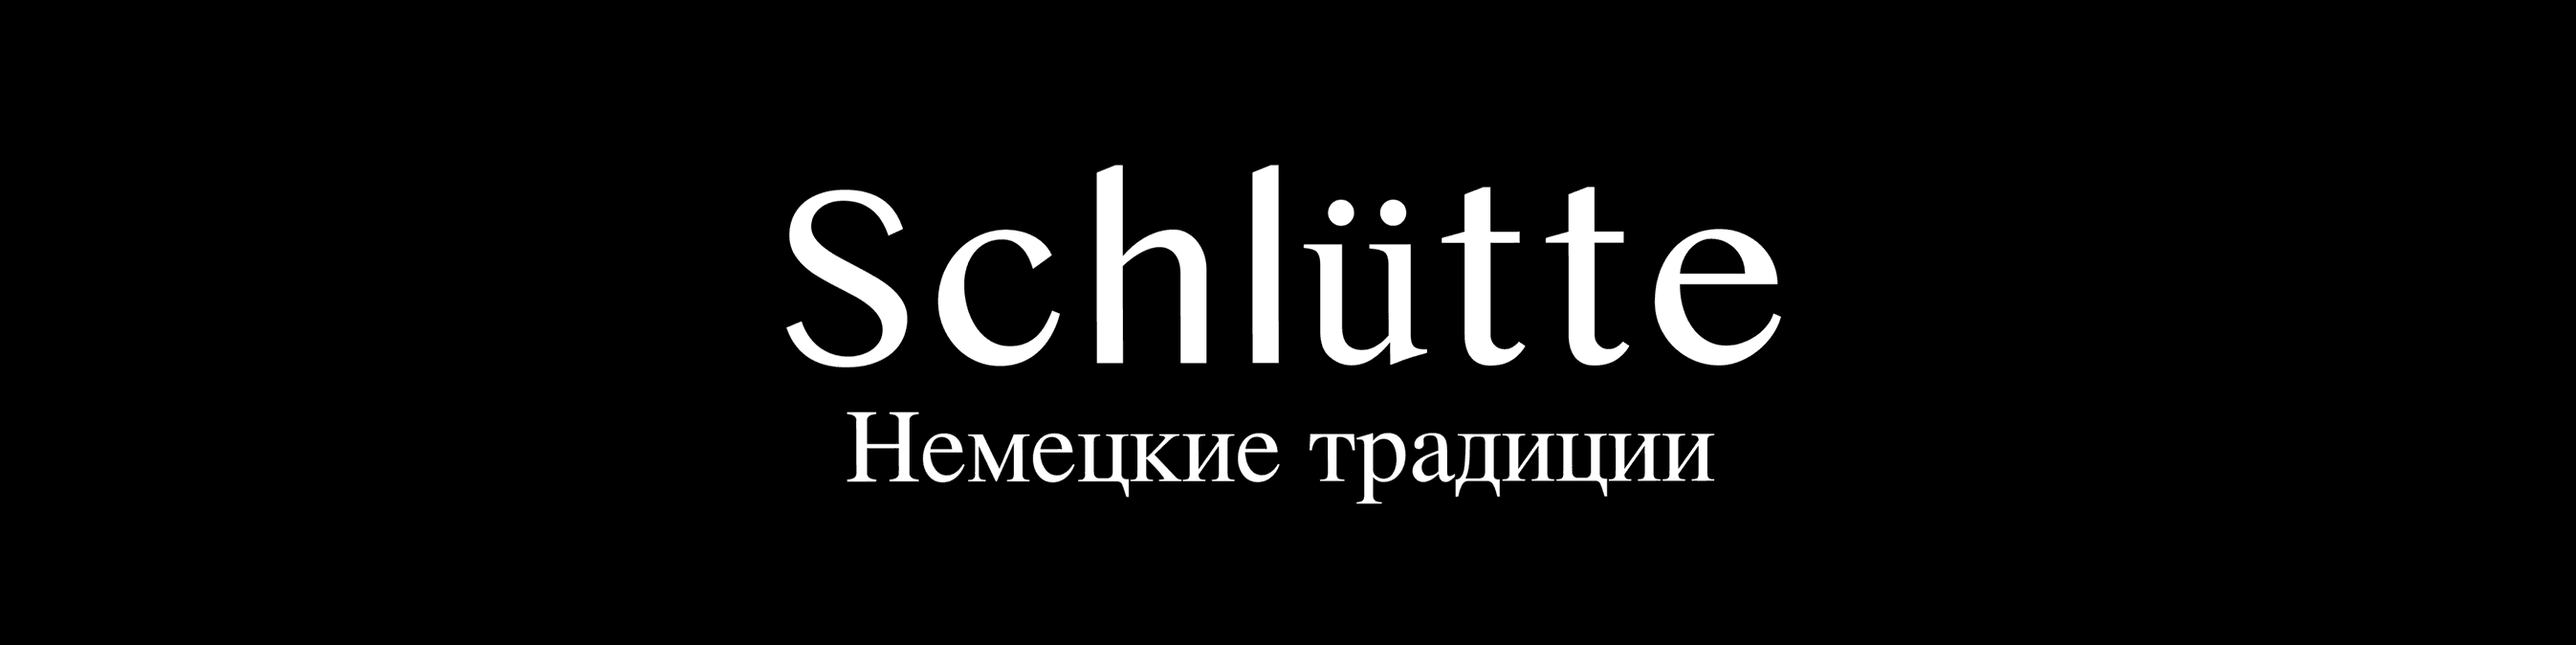 Logo Schlutte Hq